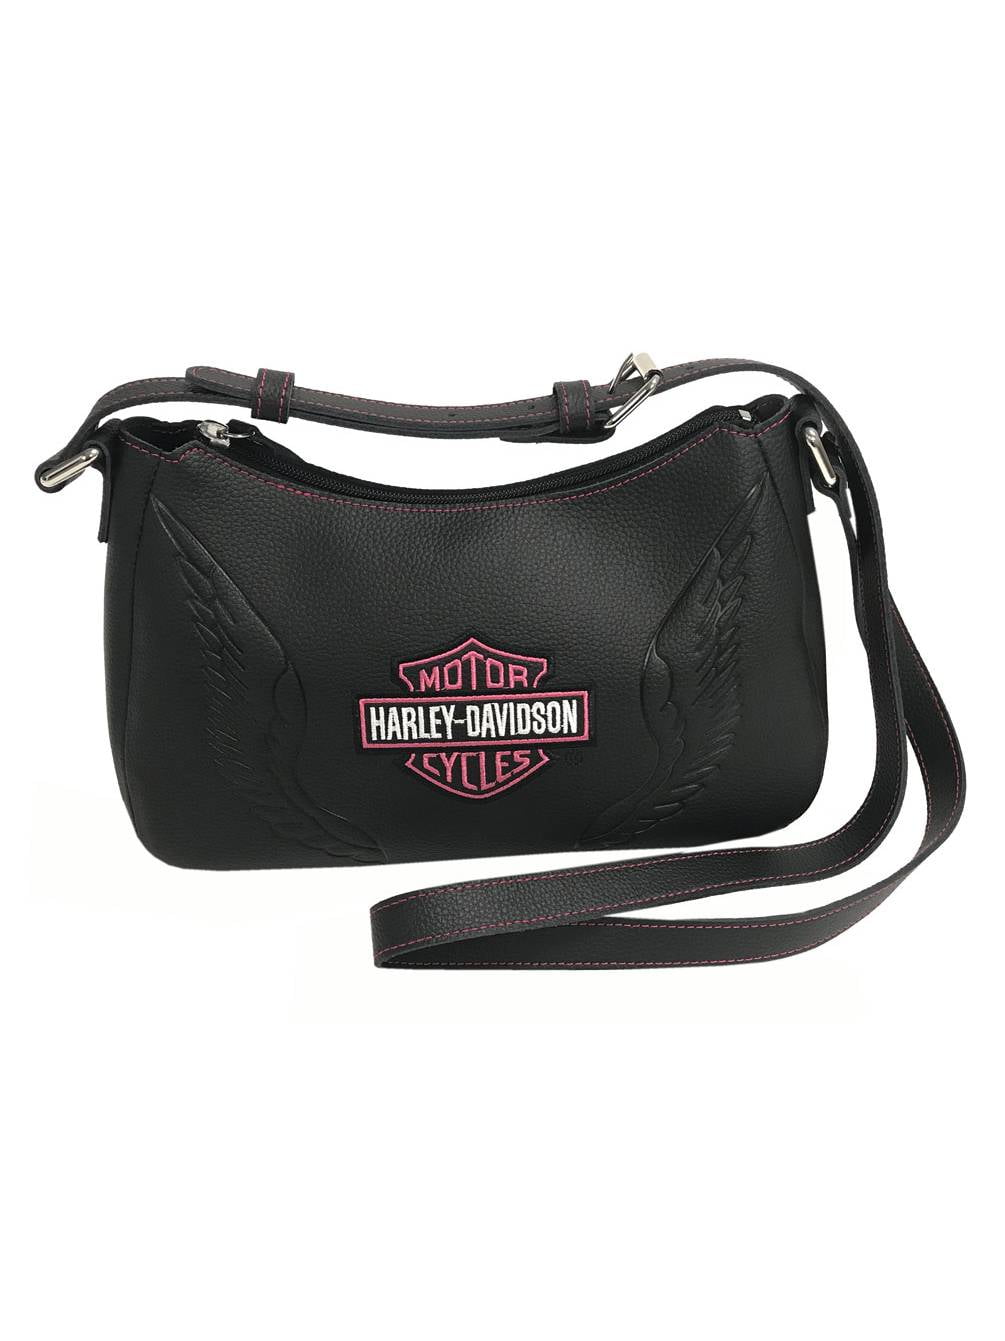 Harley-Davidson Women's Embroidered B&S Shoulder Bag, Black